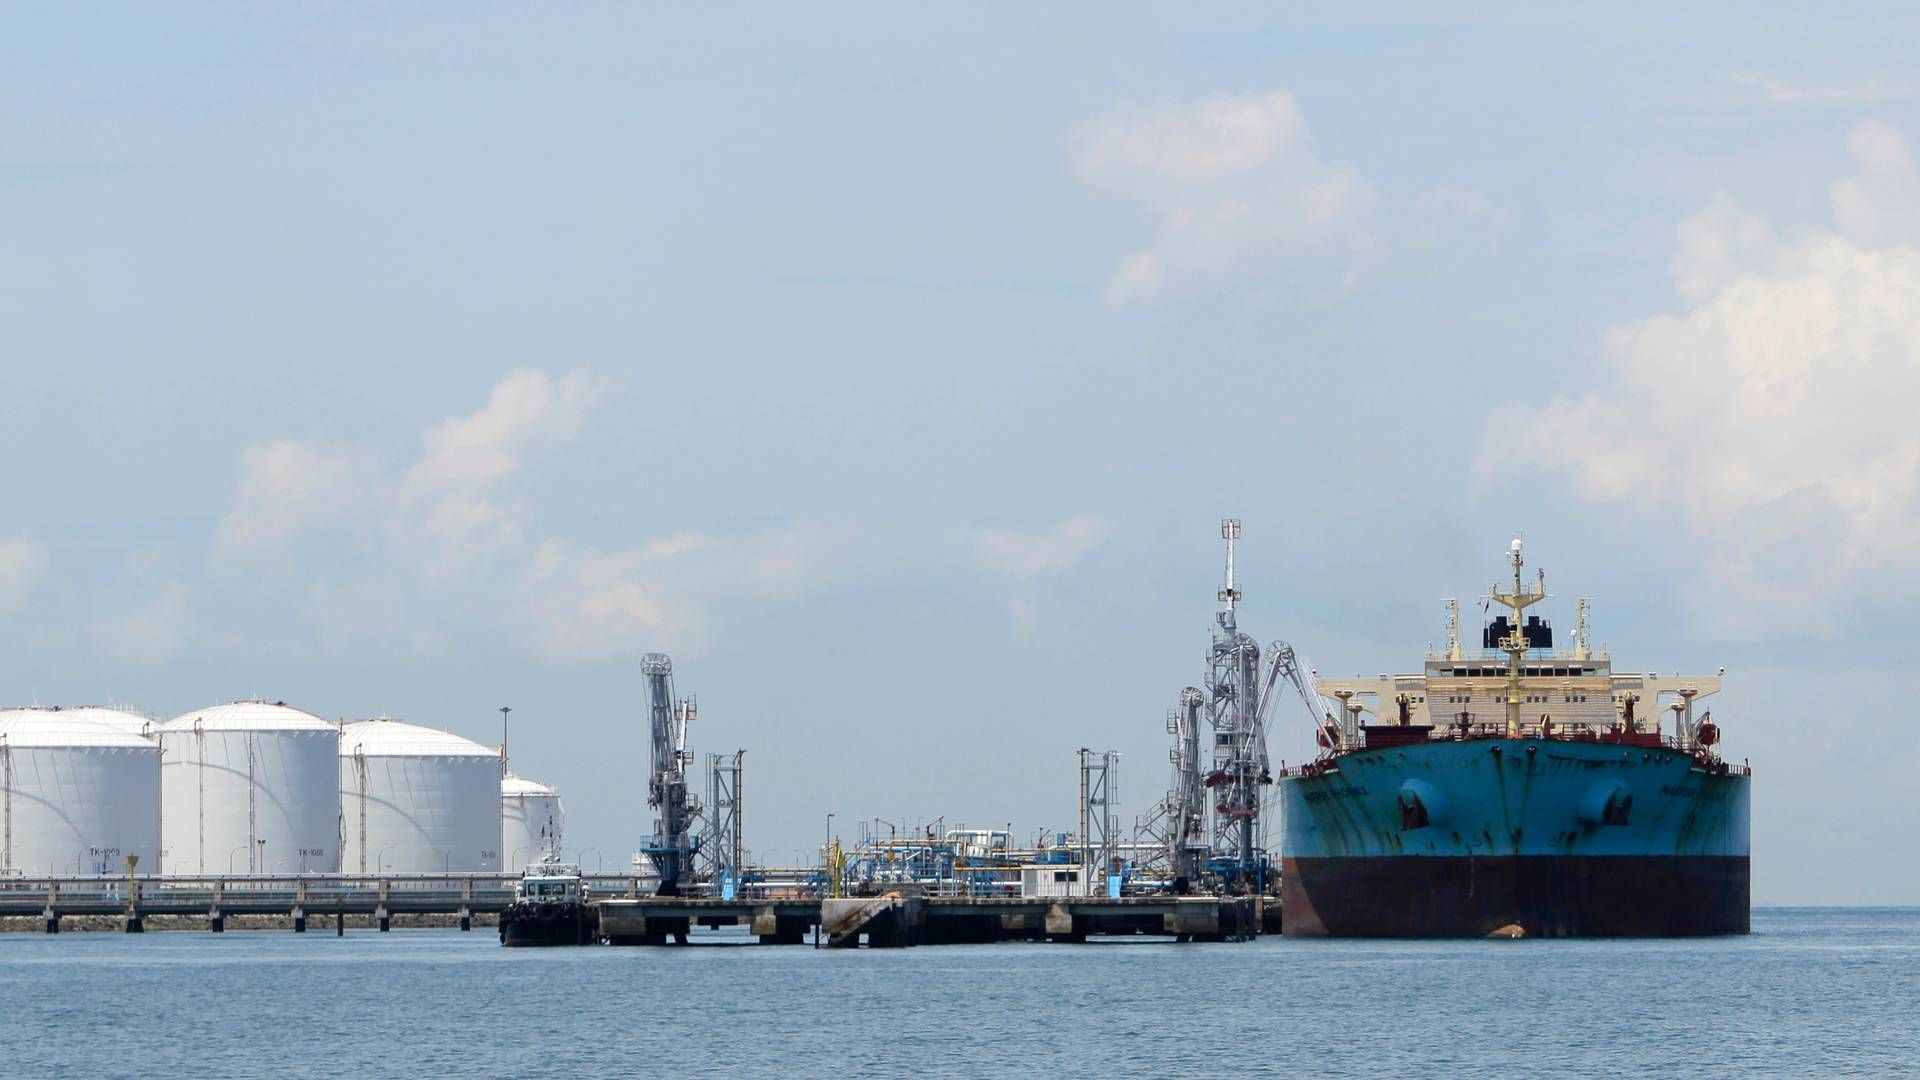 ”Olieefterspørgslen forventes at vokse hurtigst i Asien og Stillehavsområdet (med 4,7 pct. i løbet af de næste to år ifølge IEA), mens væksten i udbuddet vil være fokuseret på fjerntliggende oliebrønde i USA, Guyana, Brasilien og Canada,” skriver Braemar. | Foto: Tim Chong/Reuters/Ritzau Scanpix